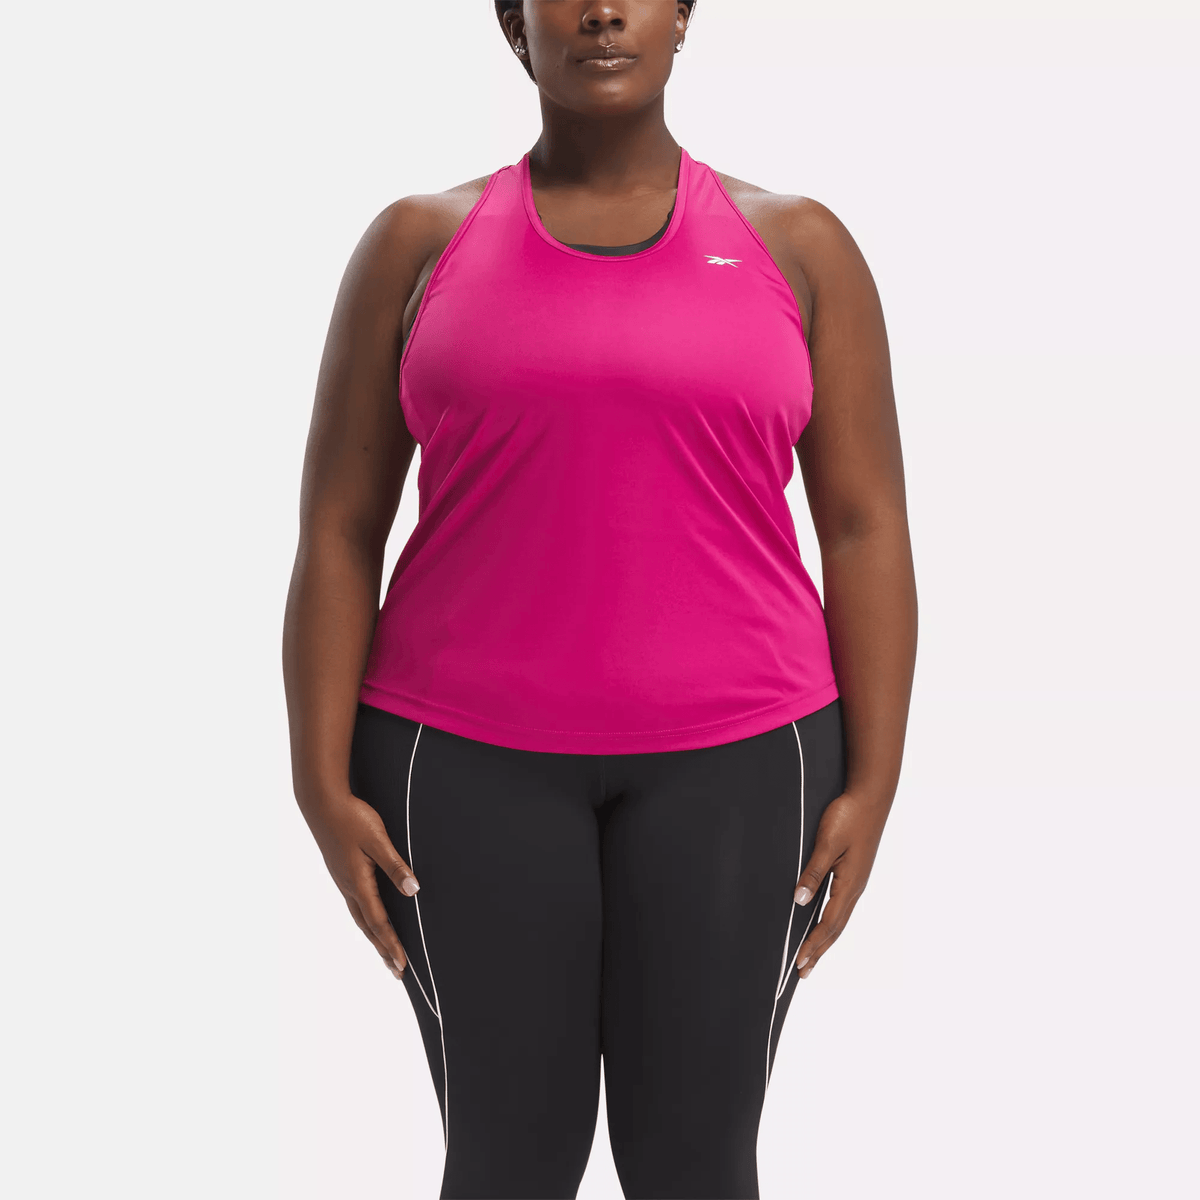 Reebok Women's Workout Ready Mesh Back Tank Top (Plus Size) Pink